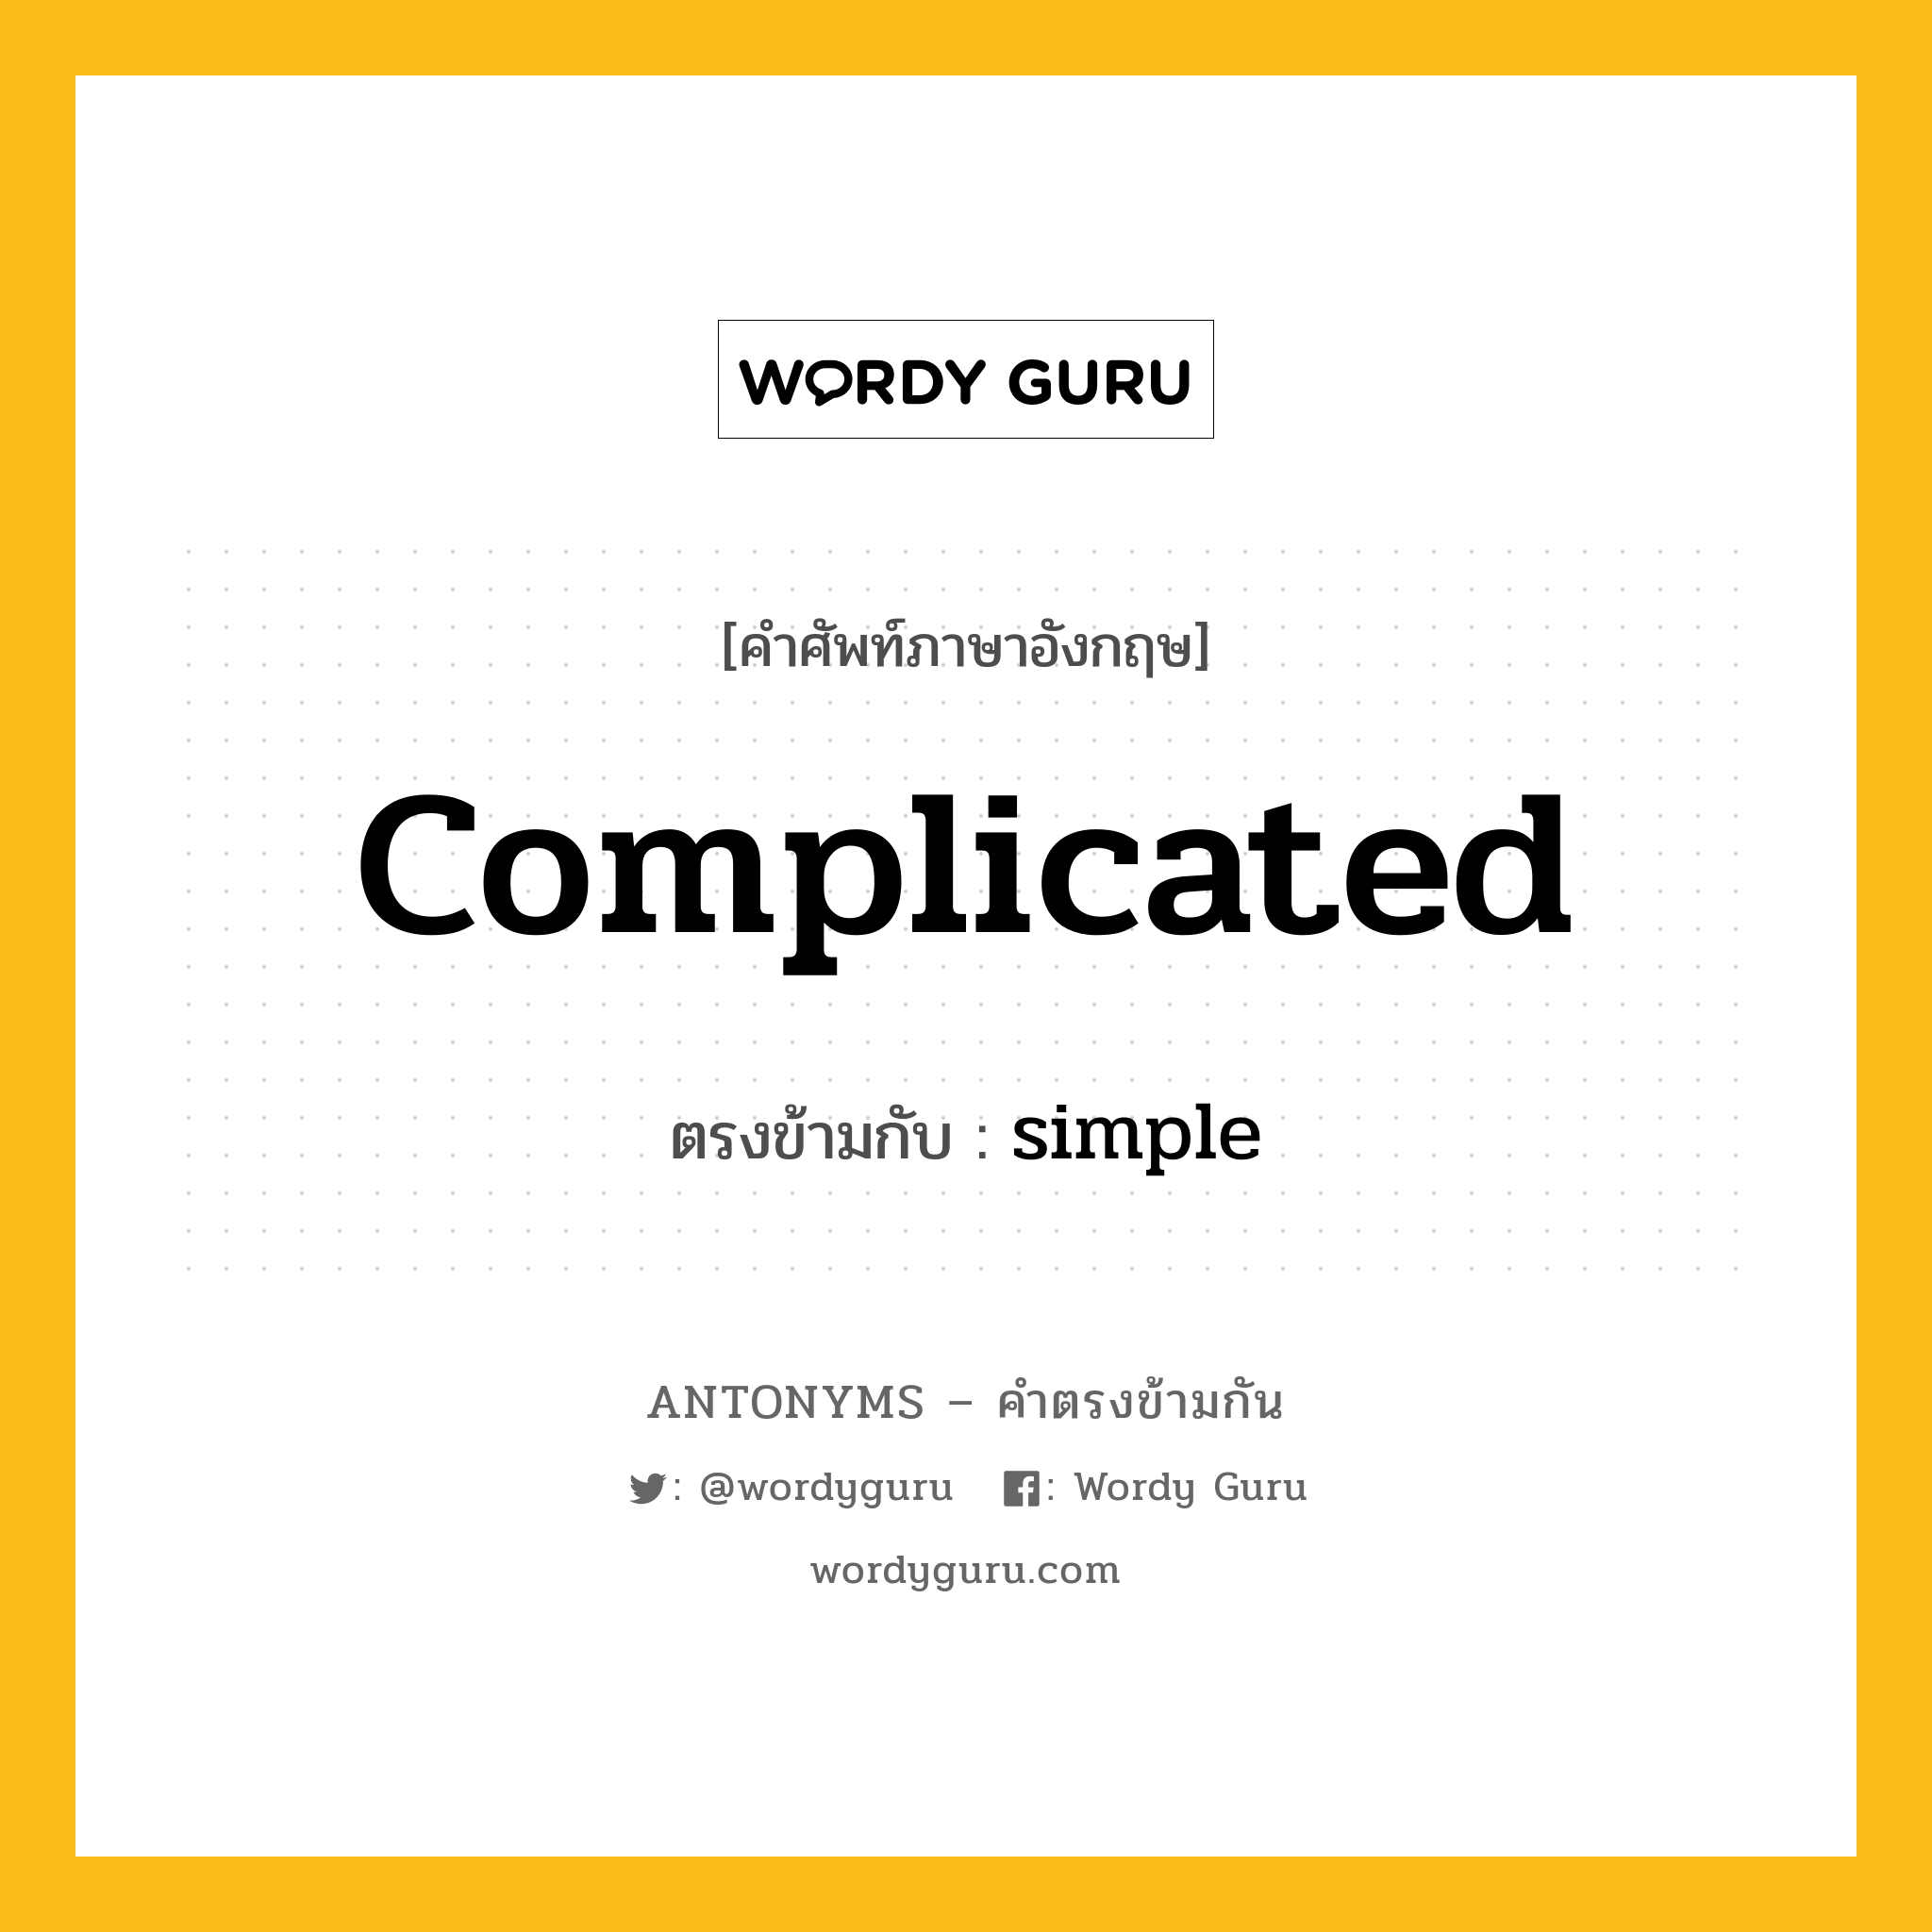 complicated เป็นคำตรงข้ามกับคำไหนบ้าง?, คำศัพท์ภาษาอังกฤษ complicated ตรงข้ามกับ simple หมวด simple